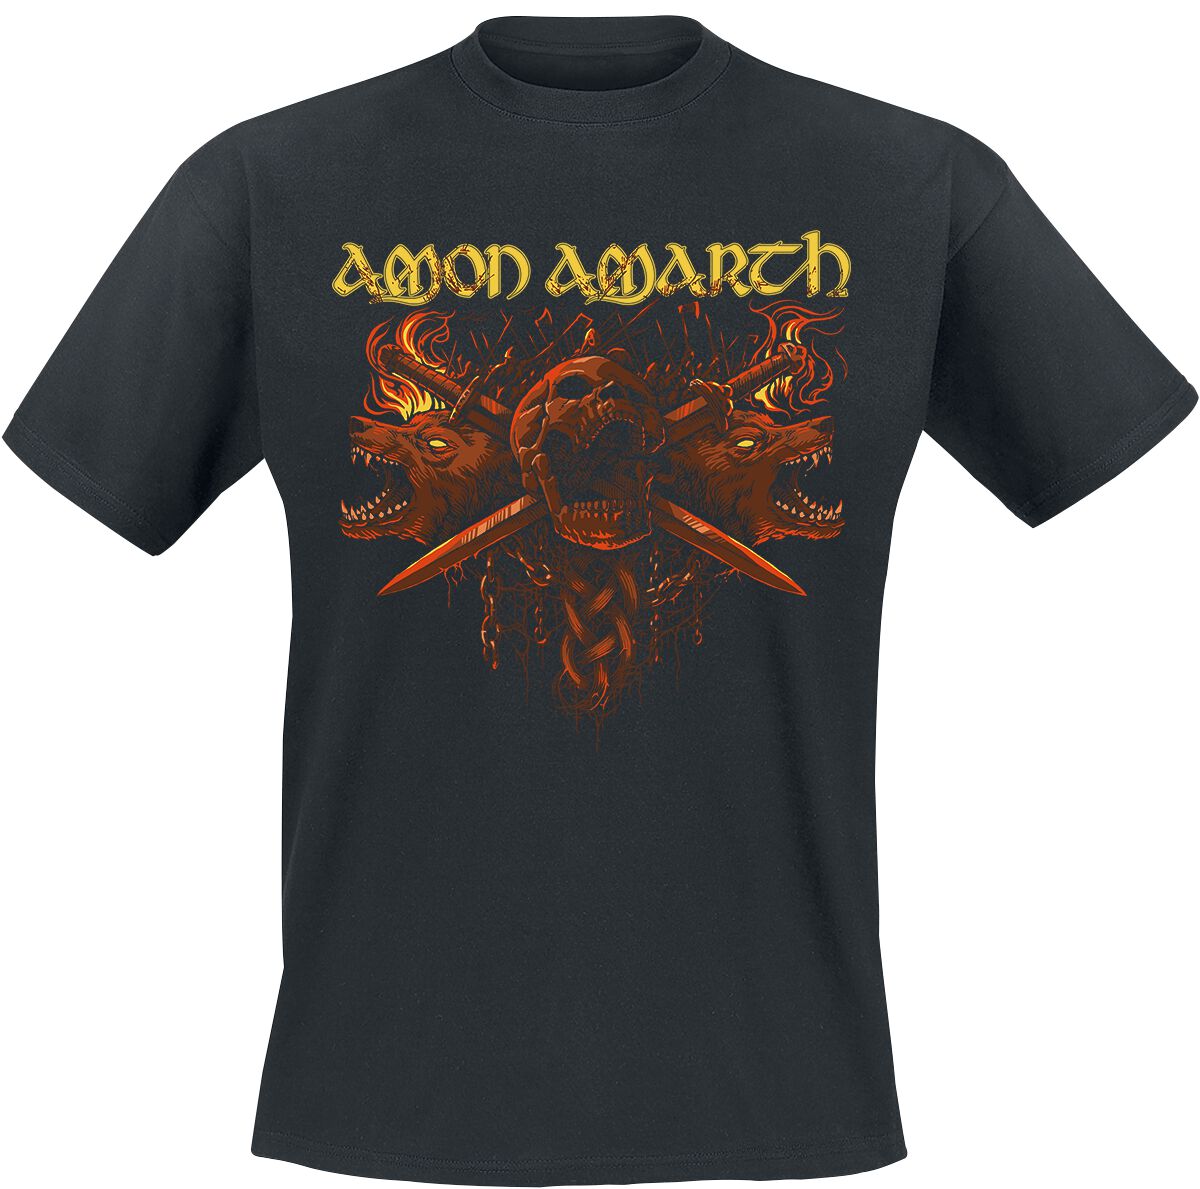 Amon Amarth T-Shirt - Masters Of War - M bis XL - für Männer - Größe M - schwarz  - Lizenziertes Merchandise!